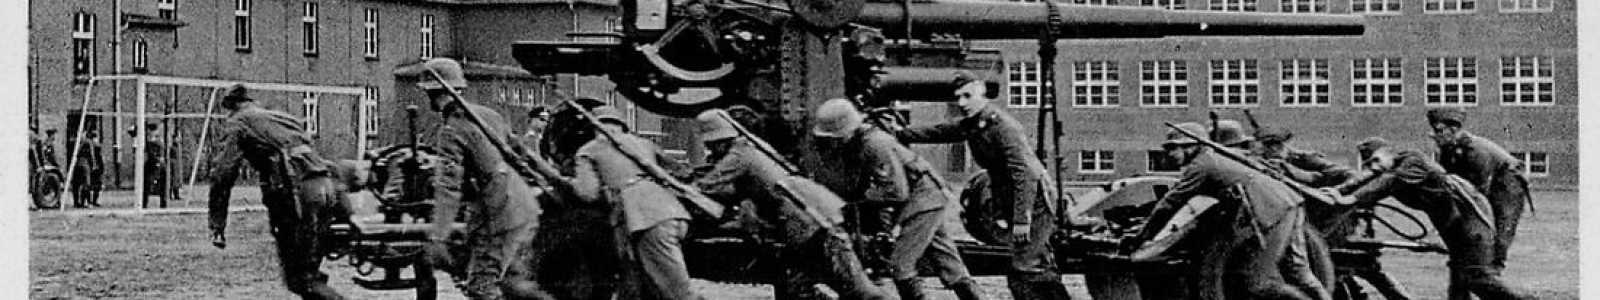 O82r - День 2: немецкая современная история - ордена и милитария 1919 года